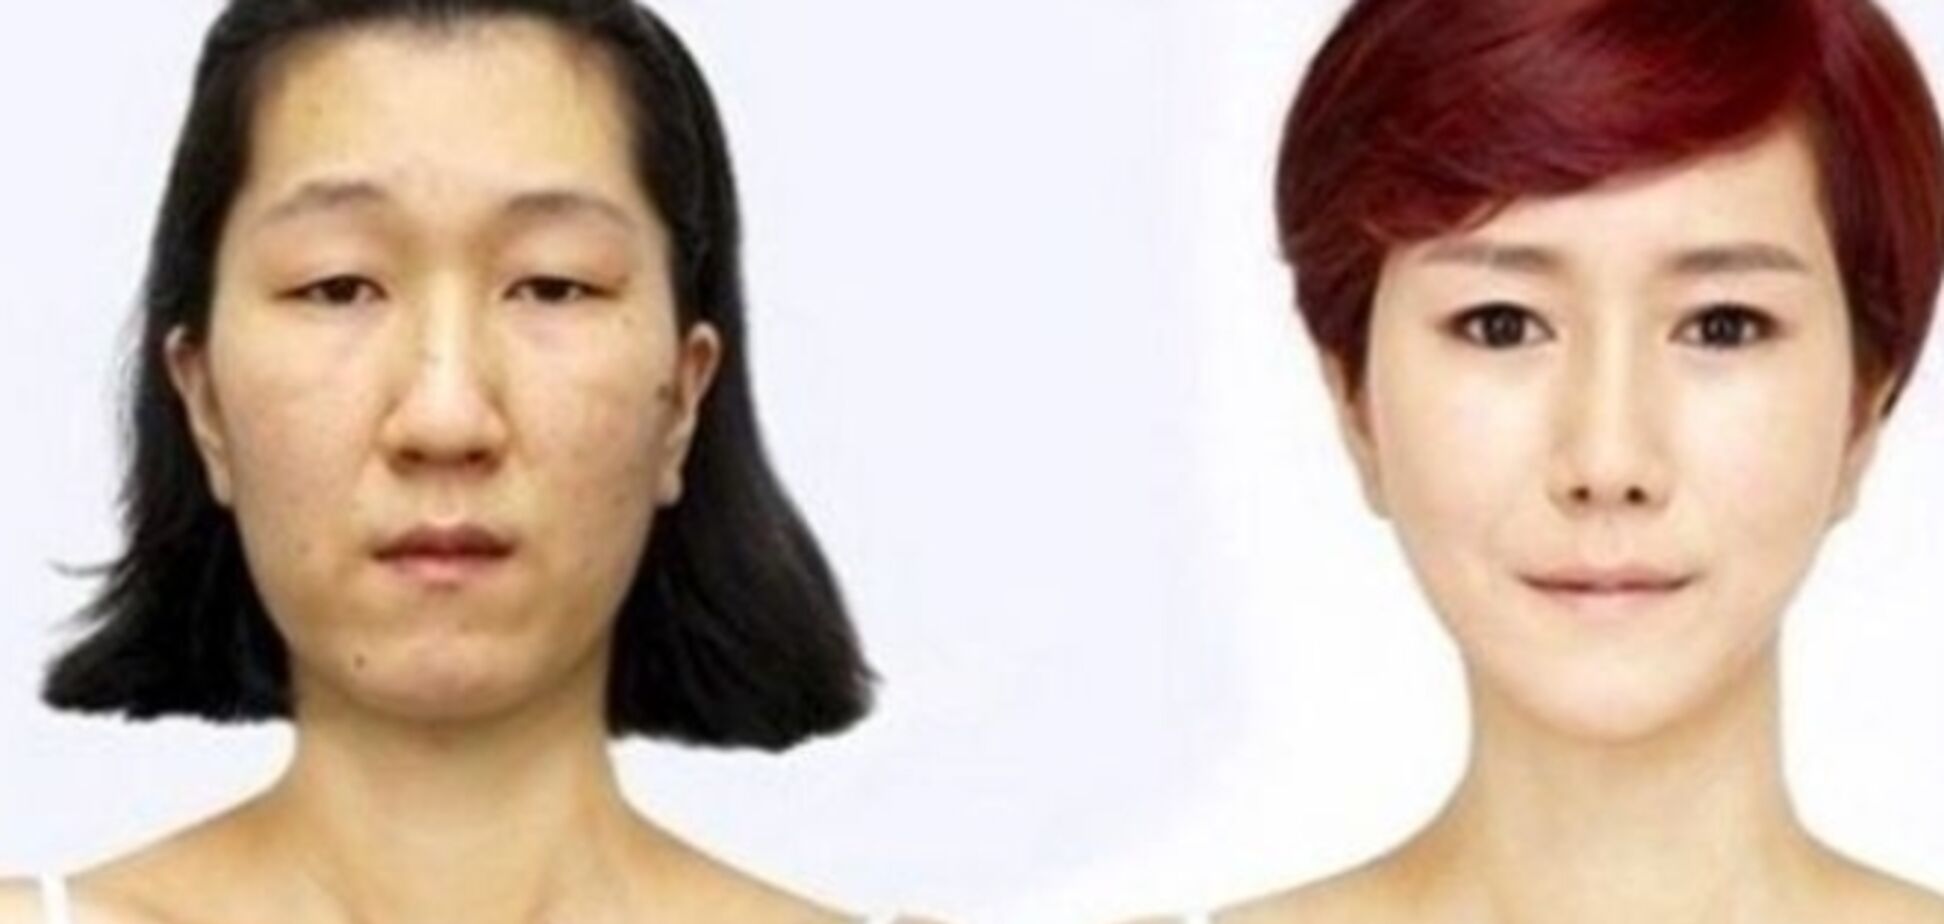 Чудеса корейской хирургии. Как врачи изменили лицо девушки